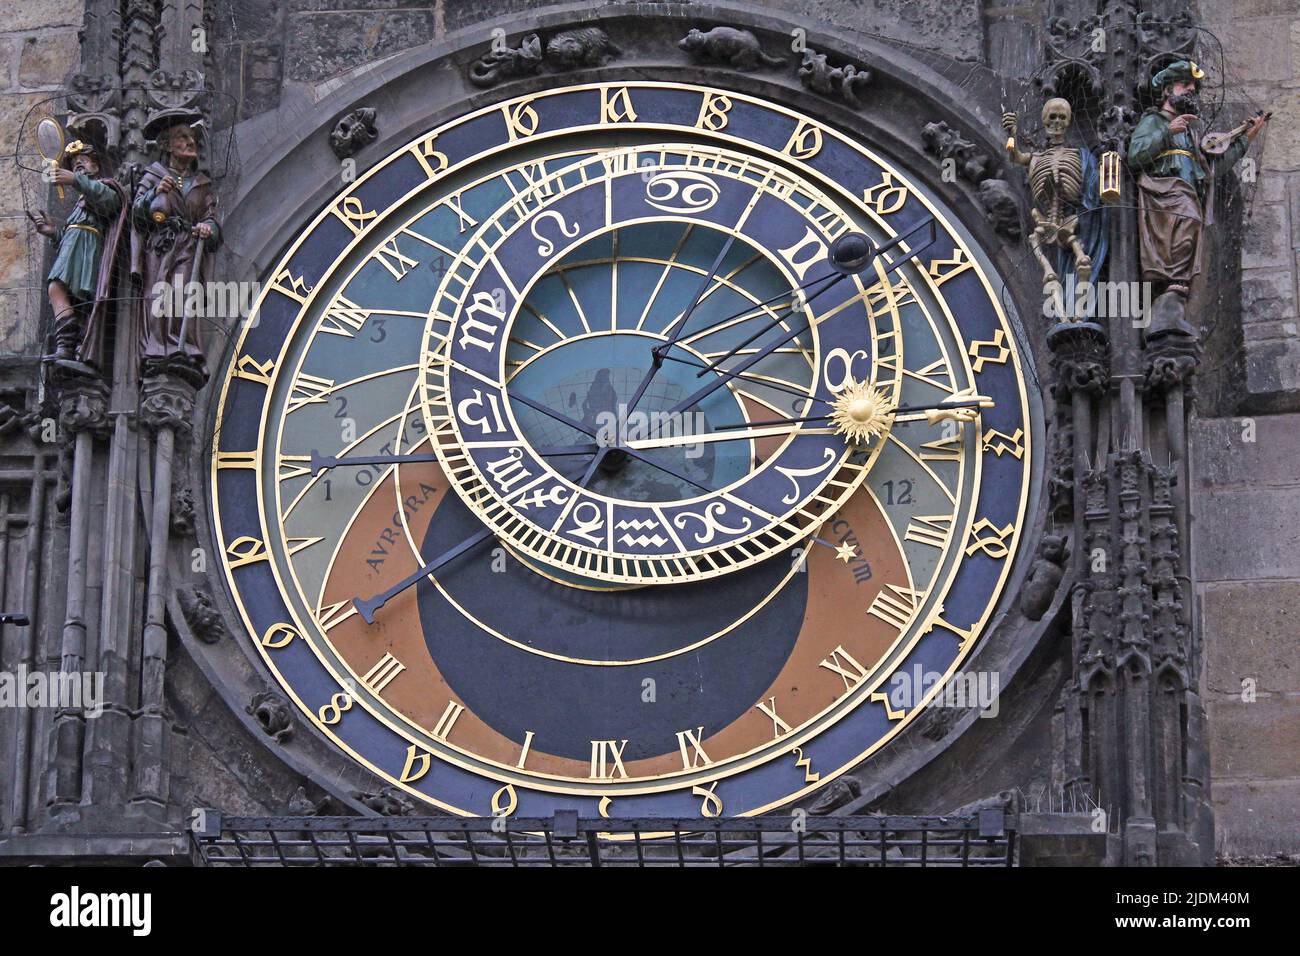 PRAGA, CHECO - 23 DE ABRIL de 2012: Este es el dial astronómico del Reloj Astronómico medieval de Praga. Foto de stock